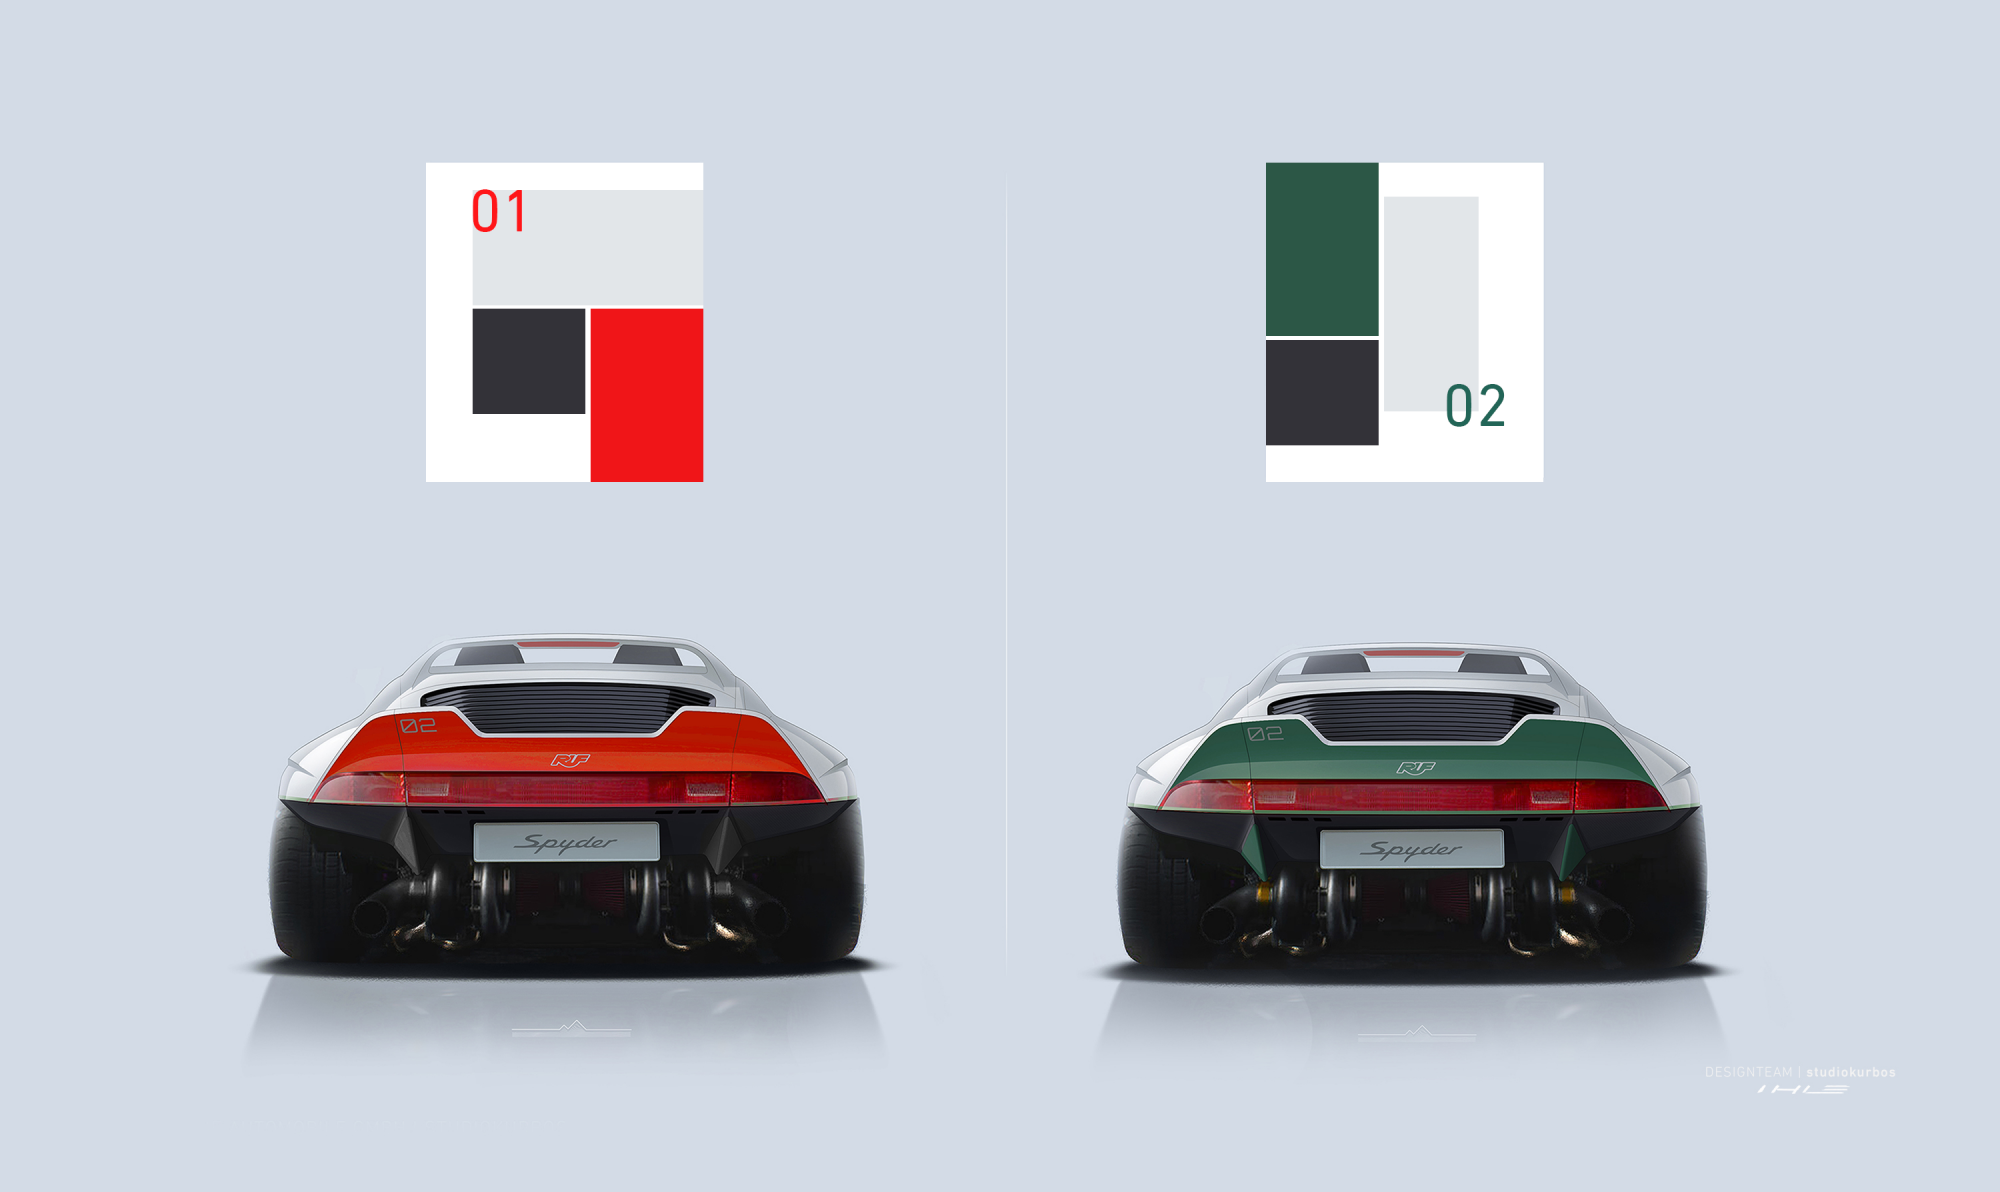 Zwei-ansichten-eines-sportwagens-von-hinten-links-ist-das-auto-rot-weiß-rechts-gruen-weiß-darueber-befinden-sich-als-vierecke-die-farbpalette